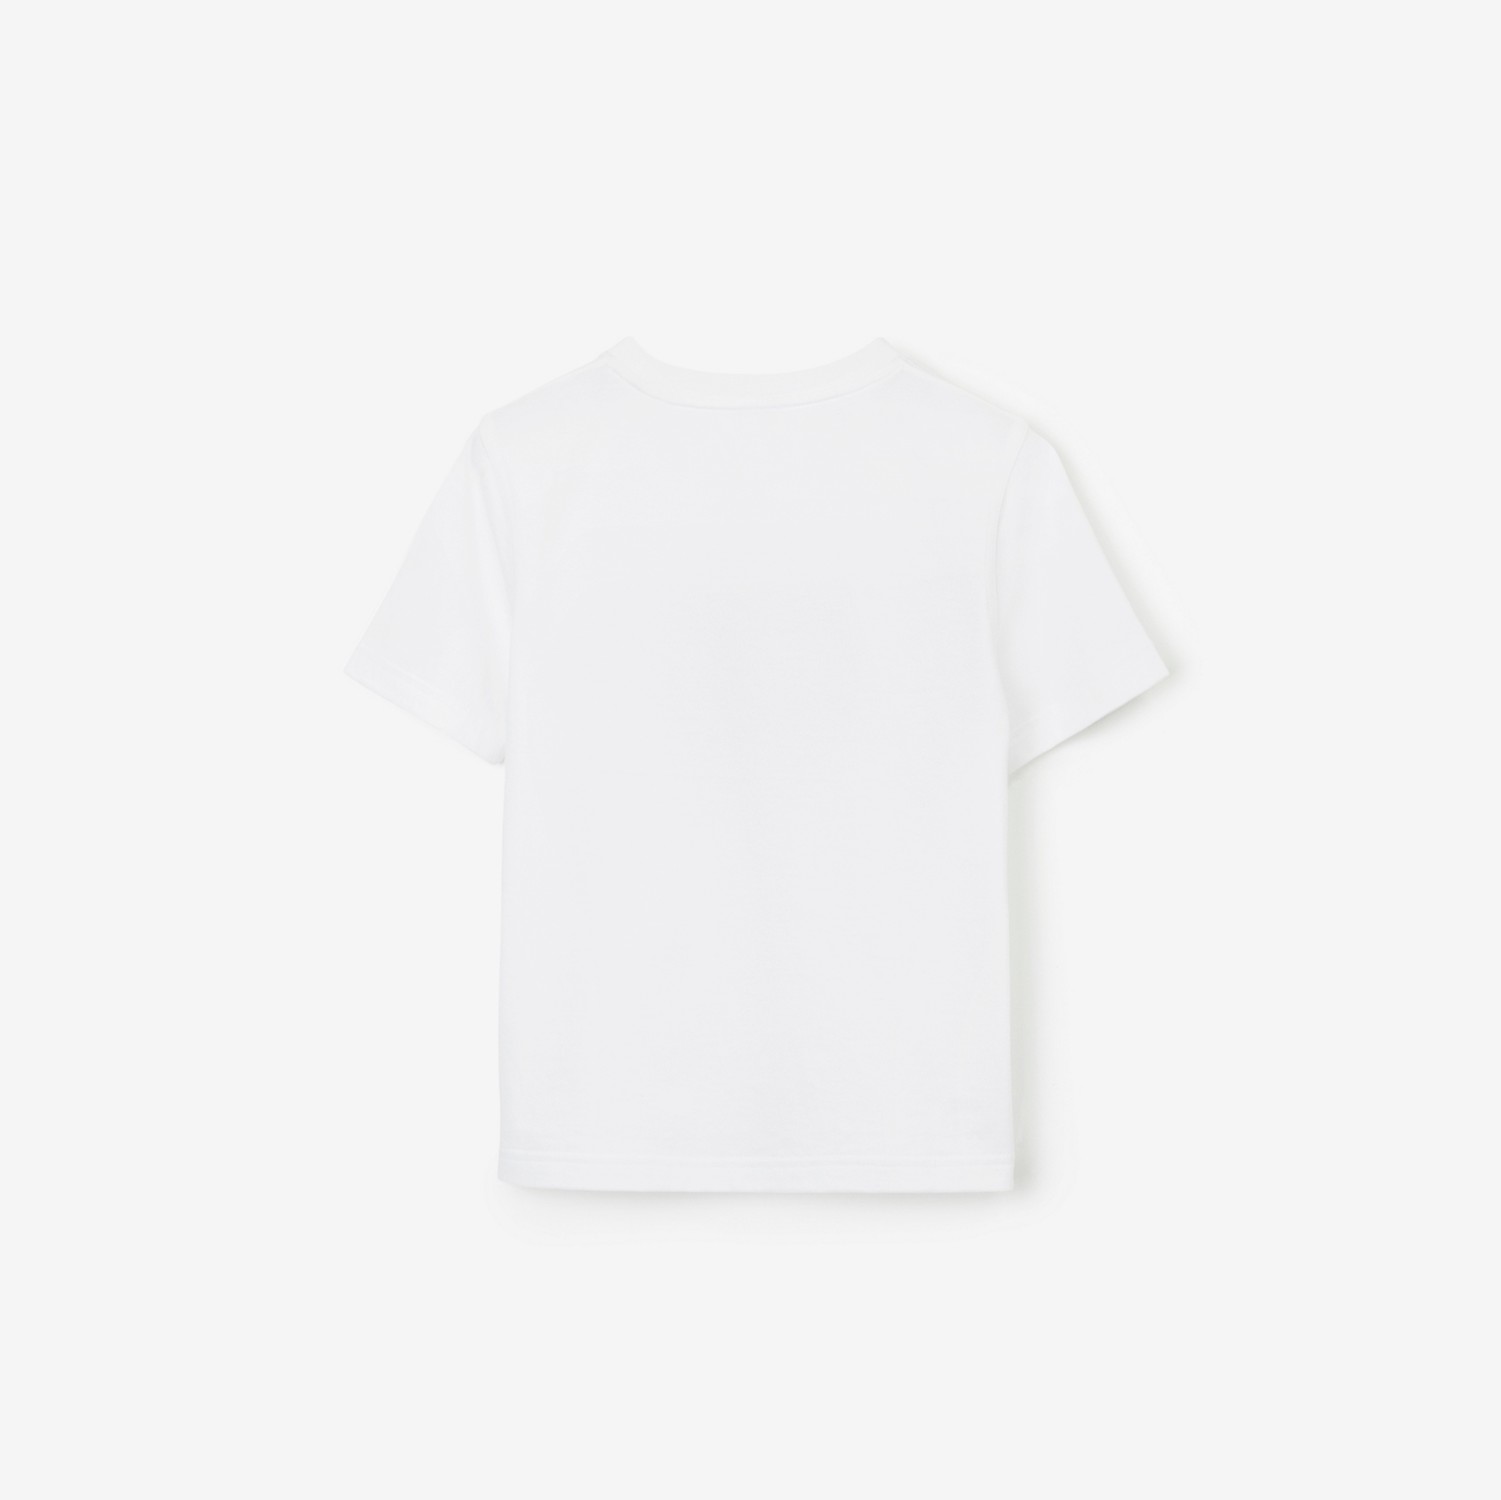 T-shirt en coton à imprimé Thomas Bear (Blanc) | Site officiel Burberry®